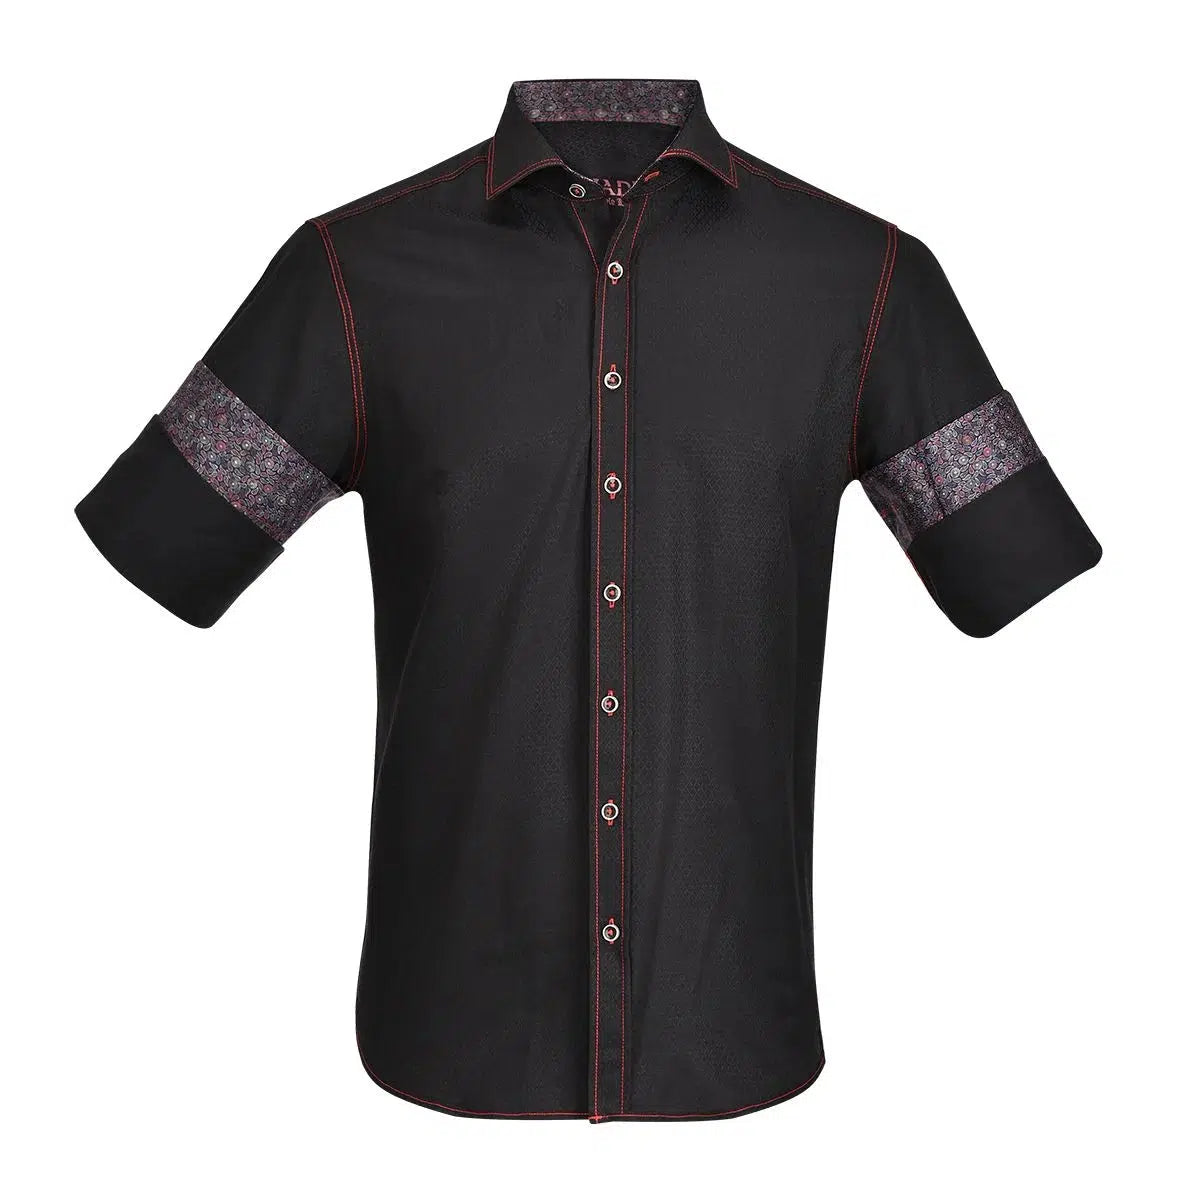 CM59572 - Cuadra black casual fashion shirt for men-Kuet.us